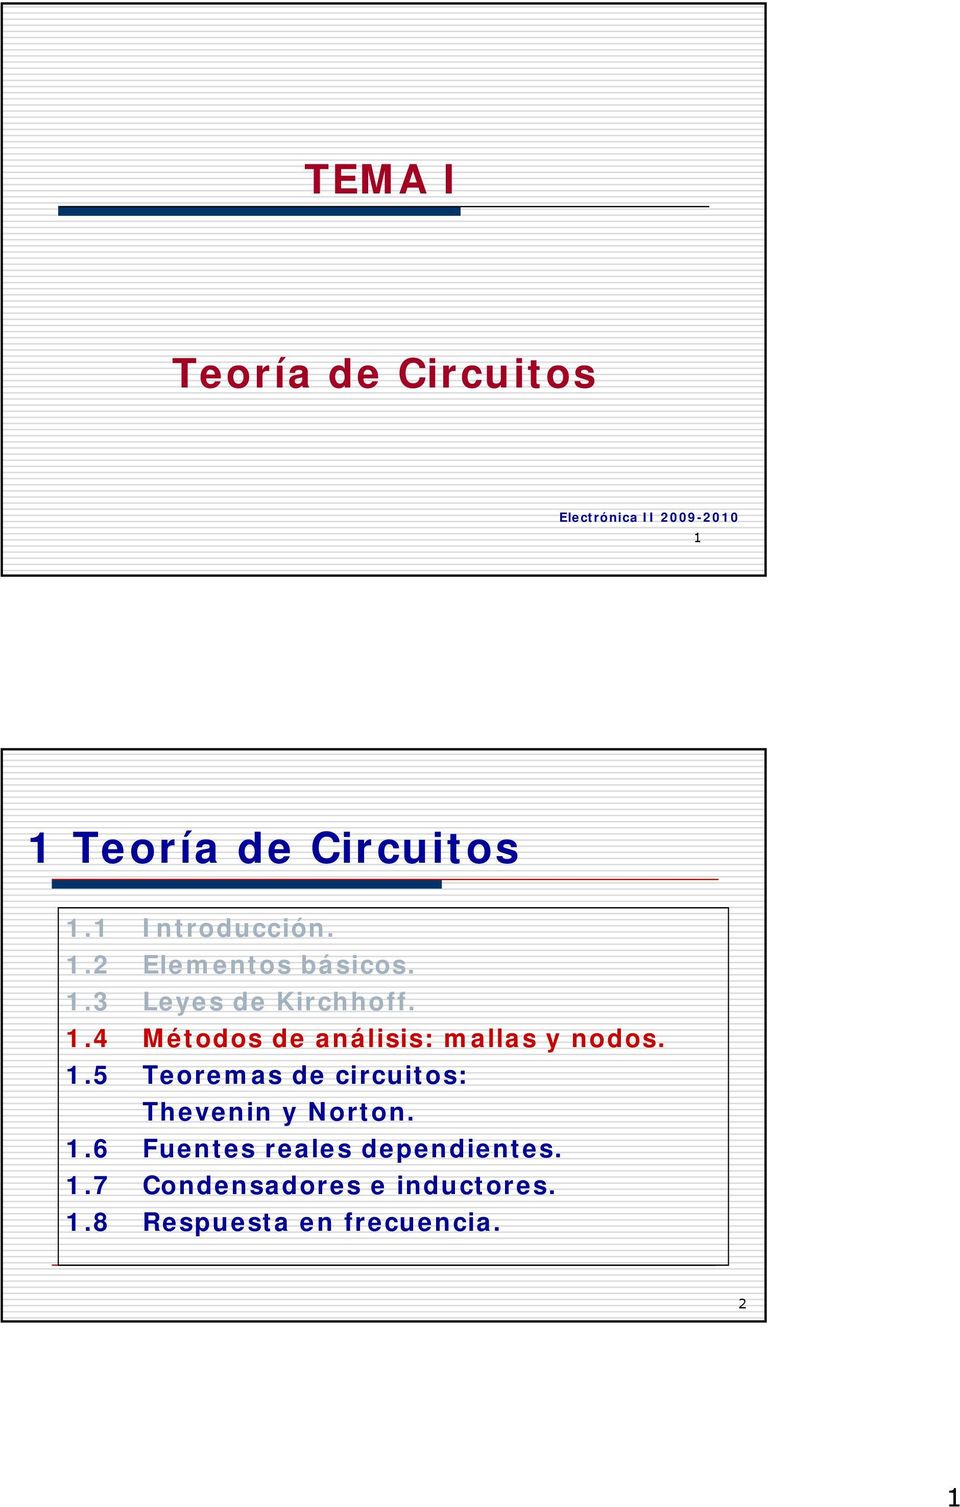 1.5 Teoremas de circuitos: Thevenin y Norton. 1.6 Fuentes reales dependientes. 1.7 Condensadores e inductores.